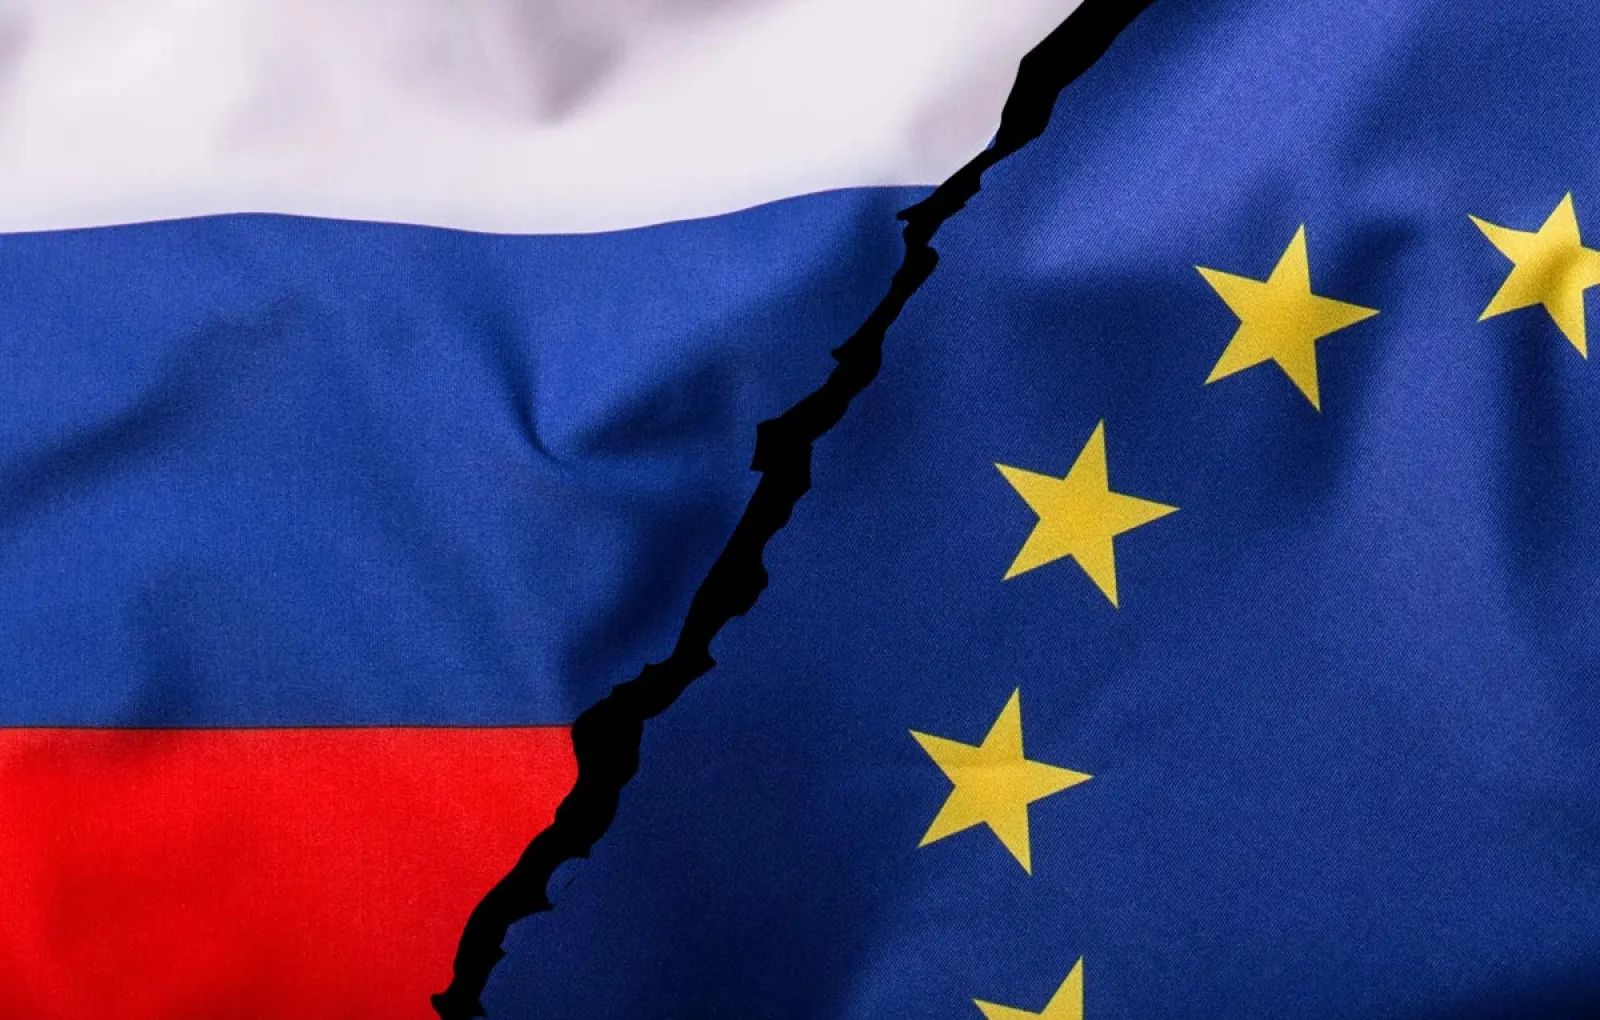 Песков: Перспективы отношений между Россией и ЕС остаются неблагоприятными